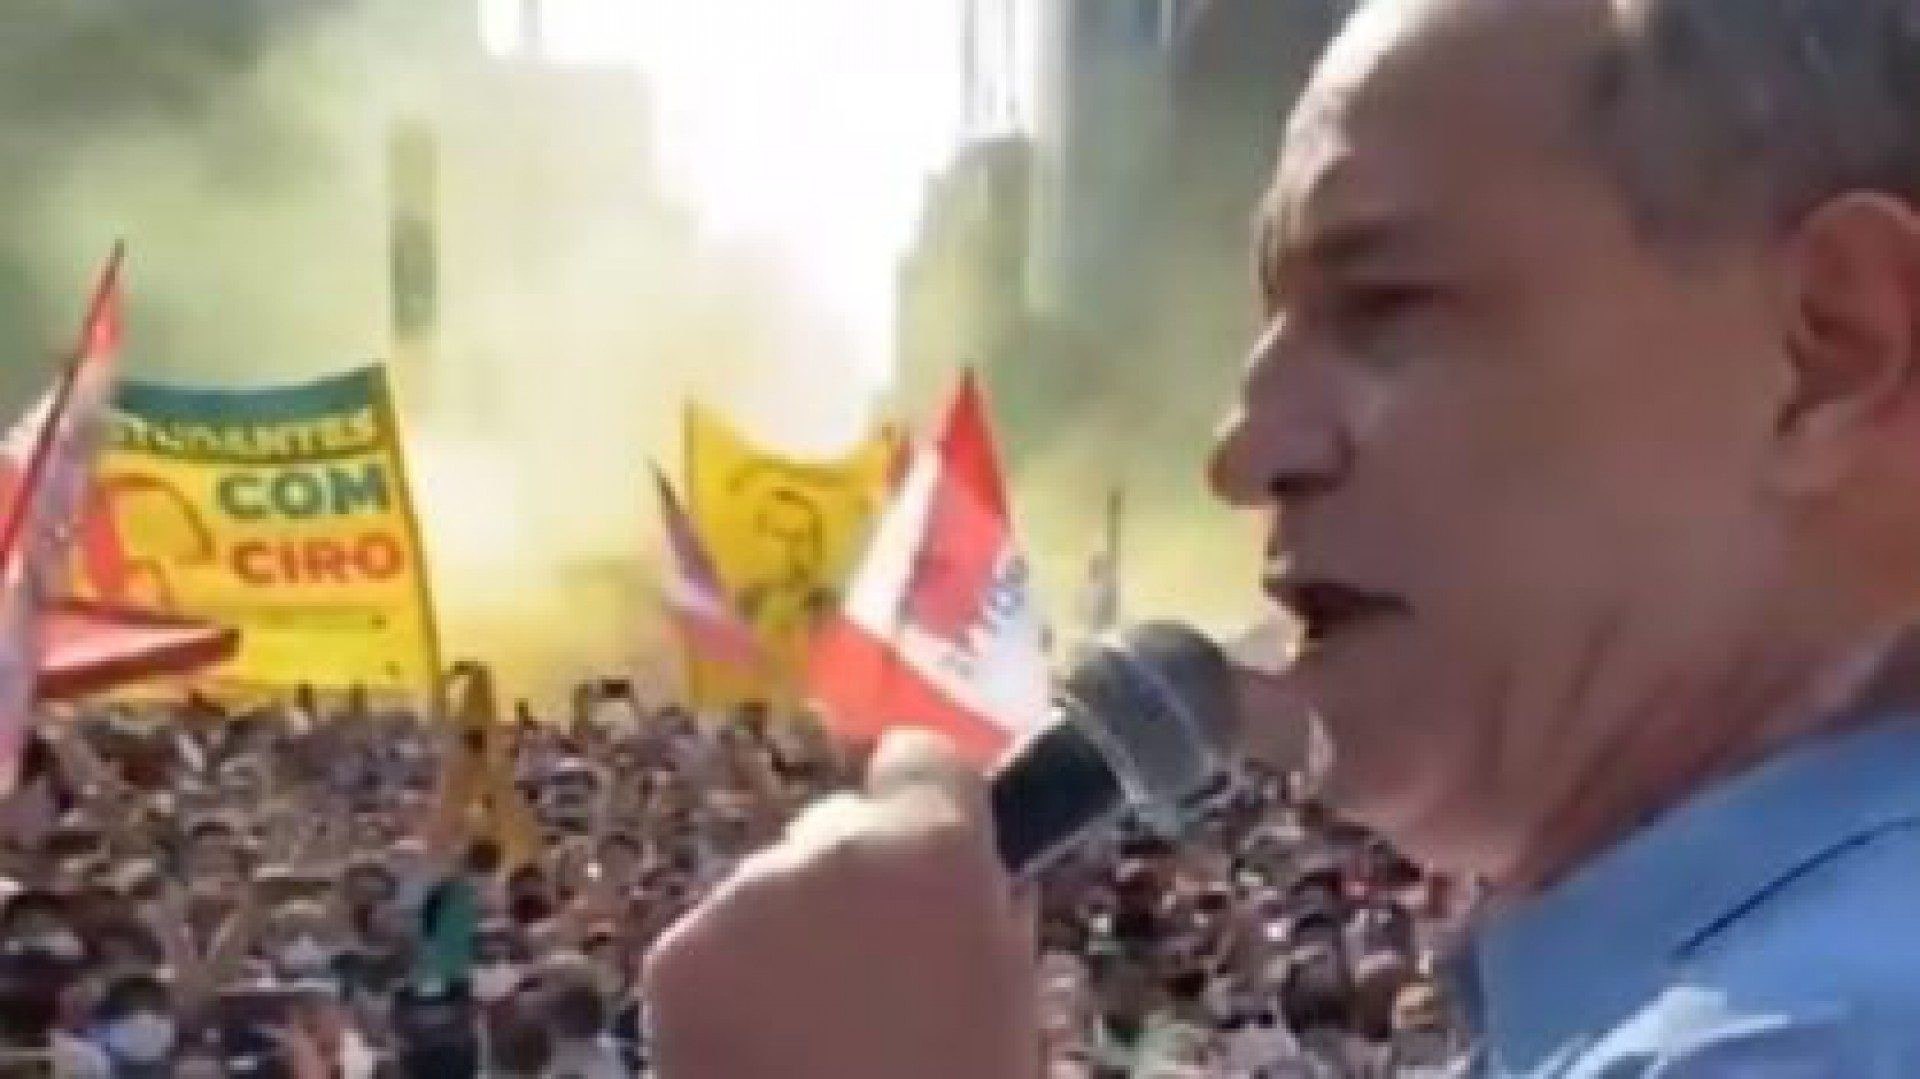 SP multa Ciro, Amoêdo e membros do MBL por não usarem máscara durante protesto na Paulista